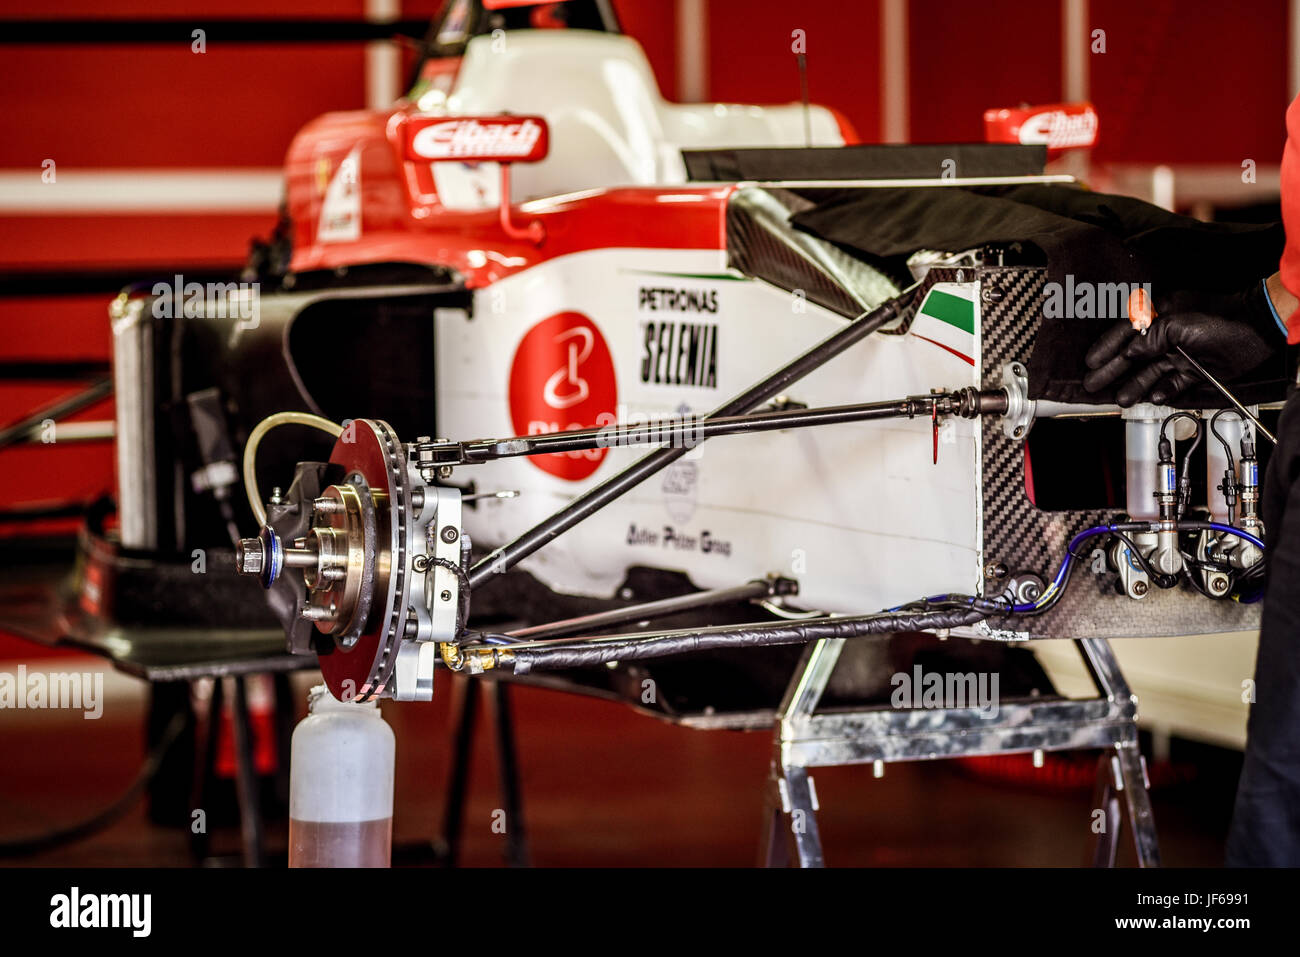 El campeonato italiano de Fórmula 4, Prema Power Team coche en boxes, taller mecánico que trabaja en el eje de transmisión y el freno Foto de stock